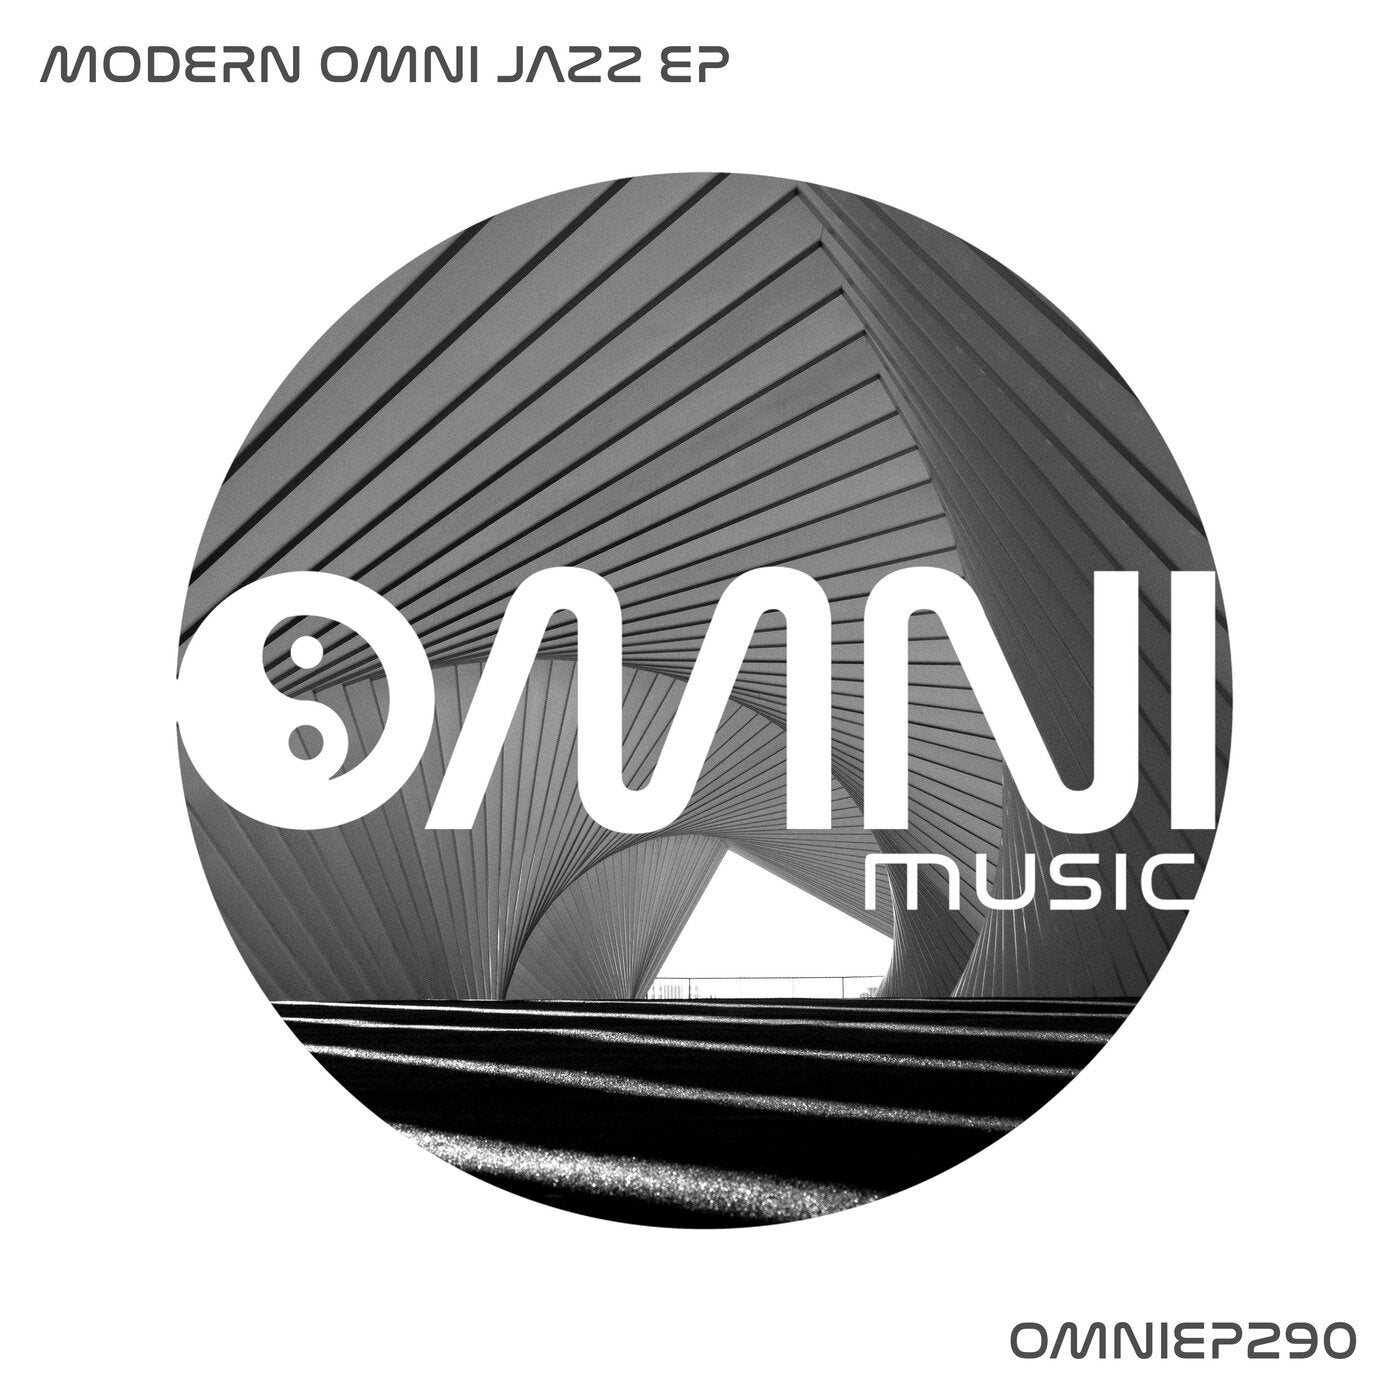 Modern Omni Jazz